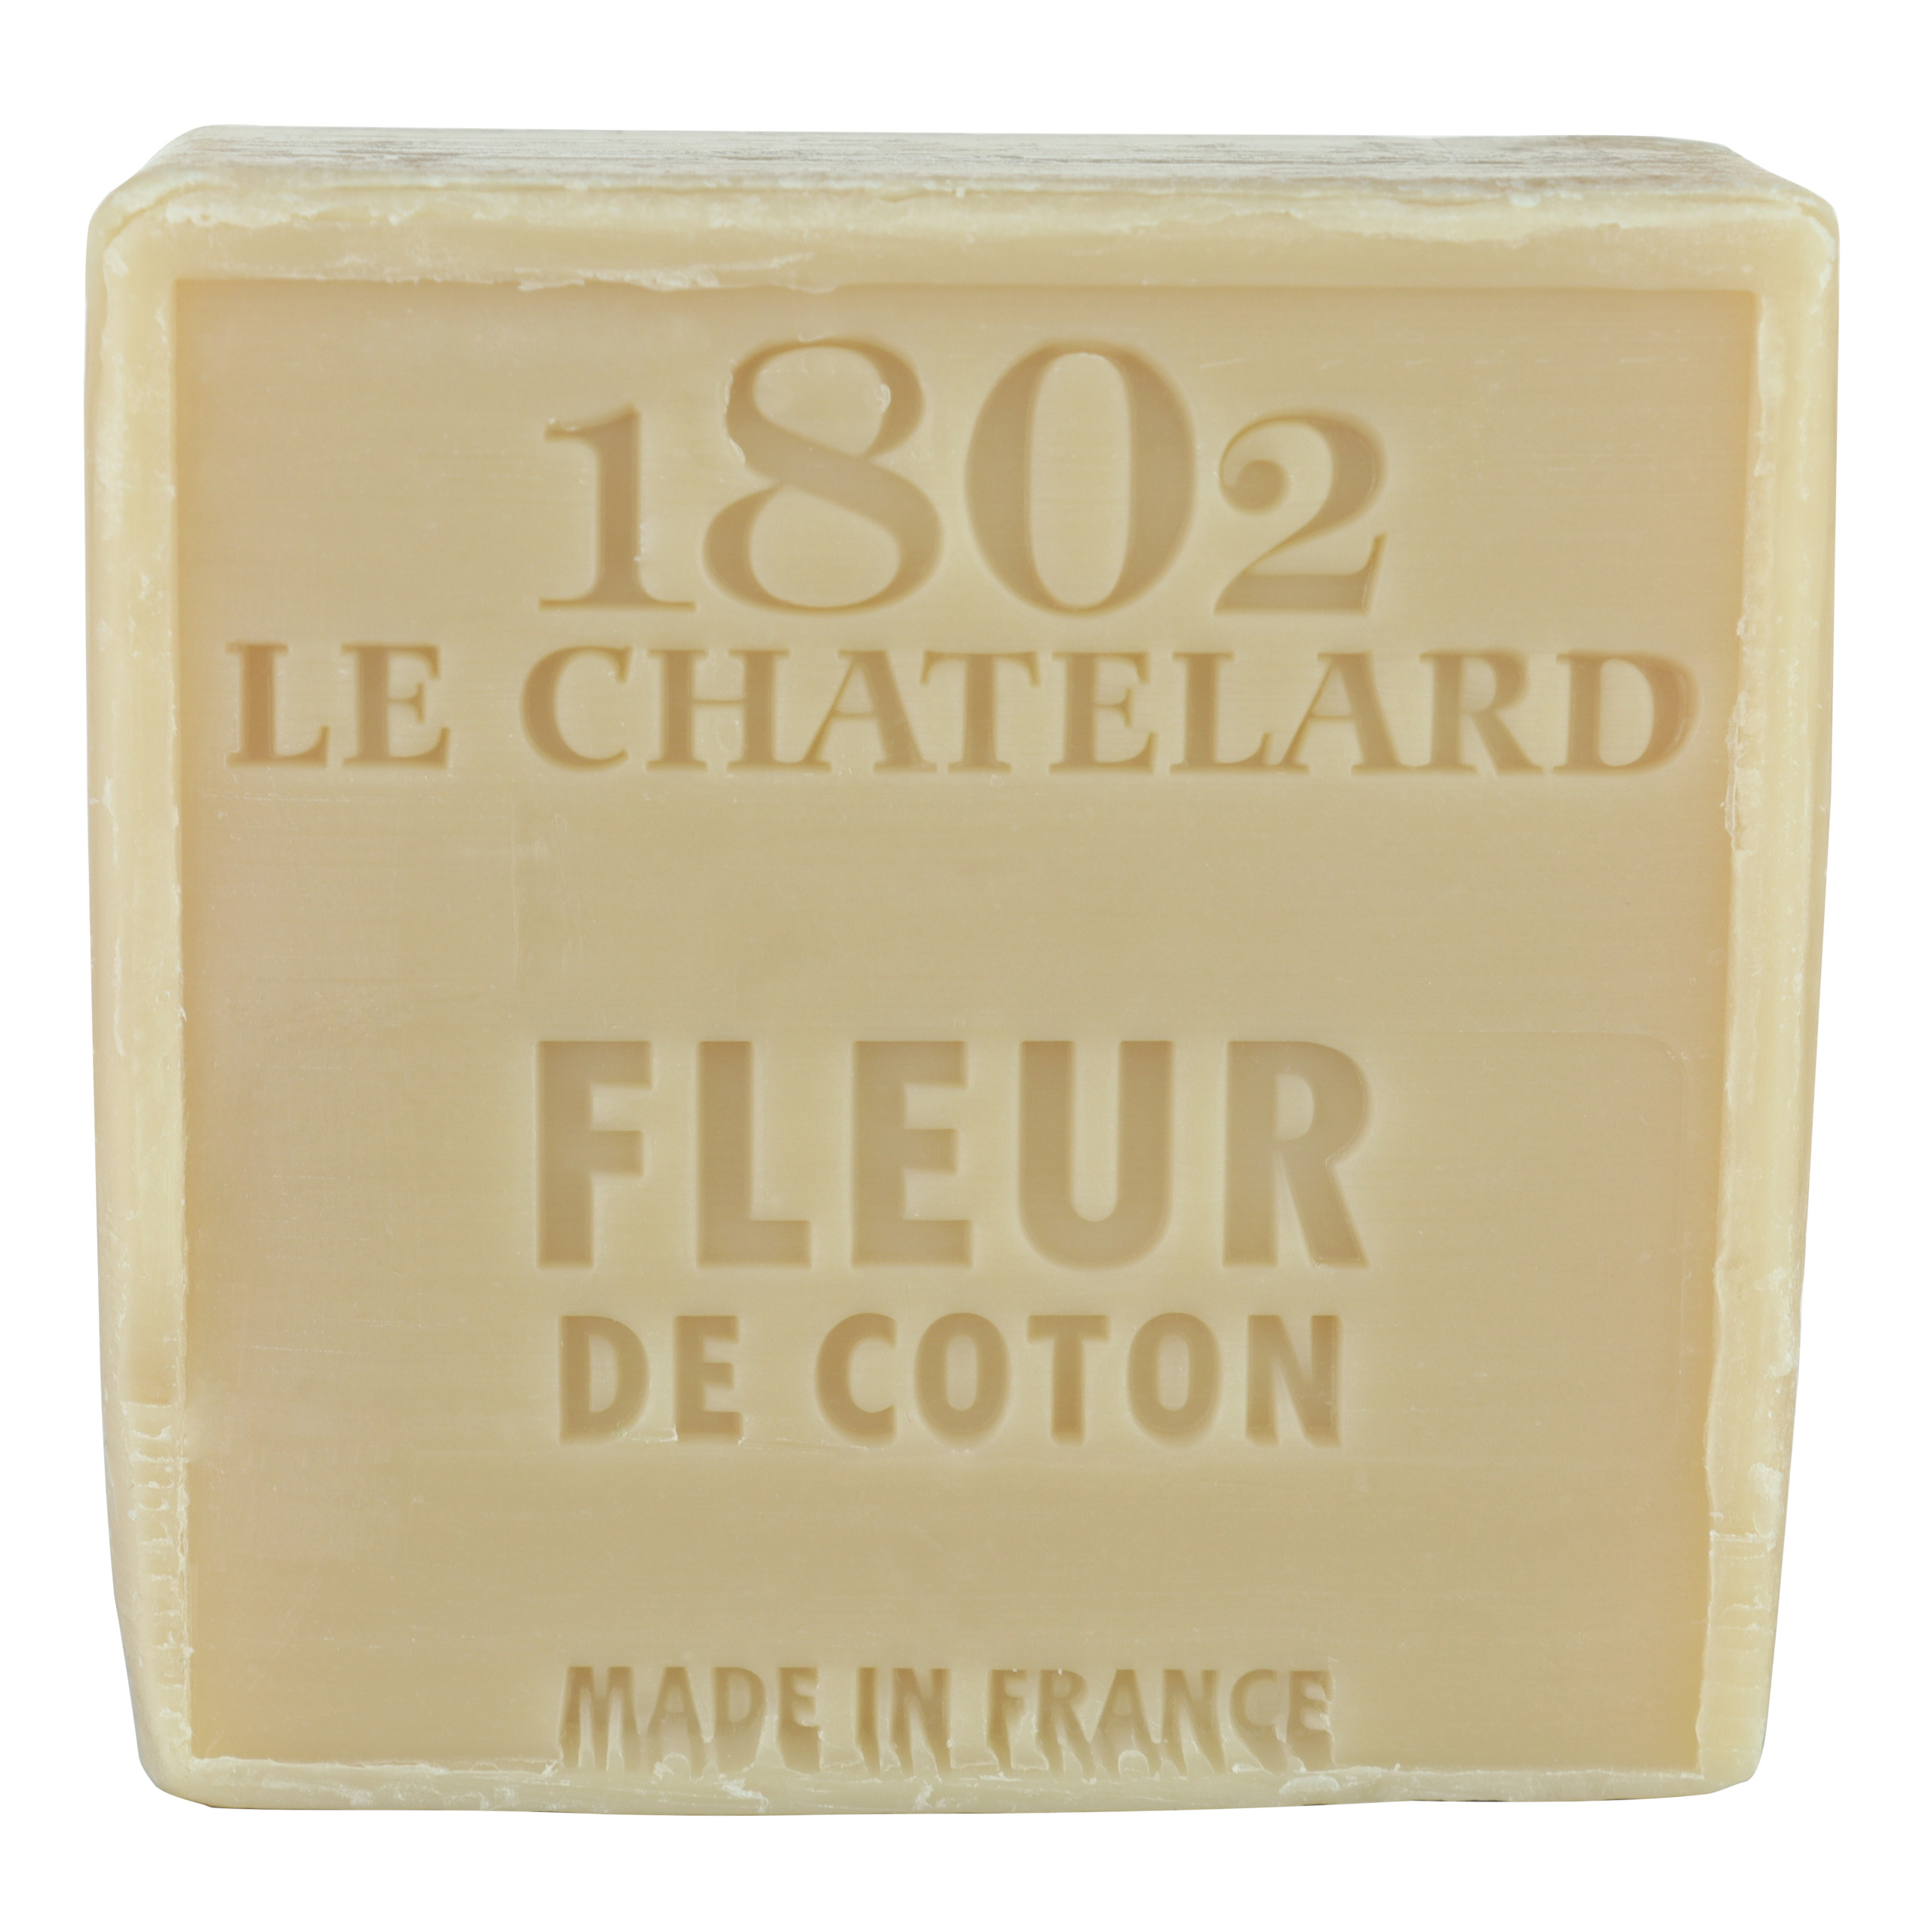 Mydło marsylskie Kwiat Bawełny 100g Le Chatelard 1802 bez oleju palmowego